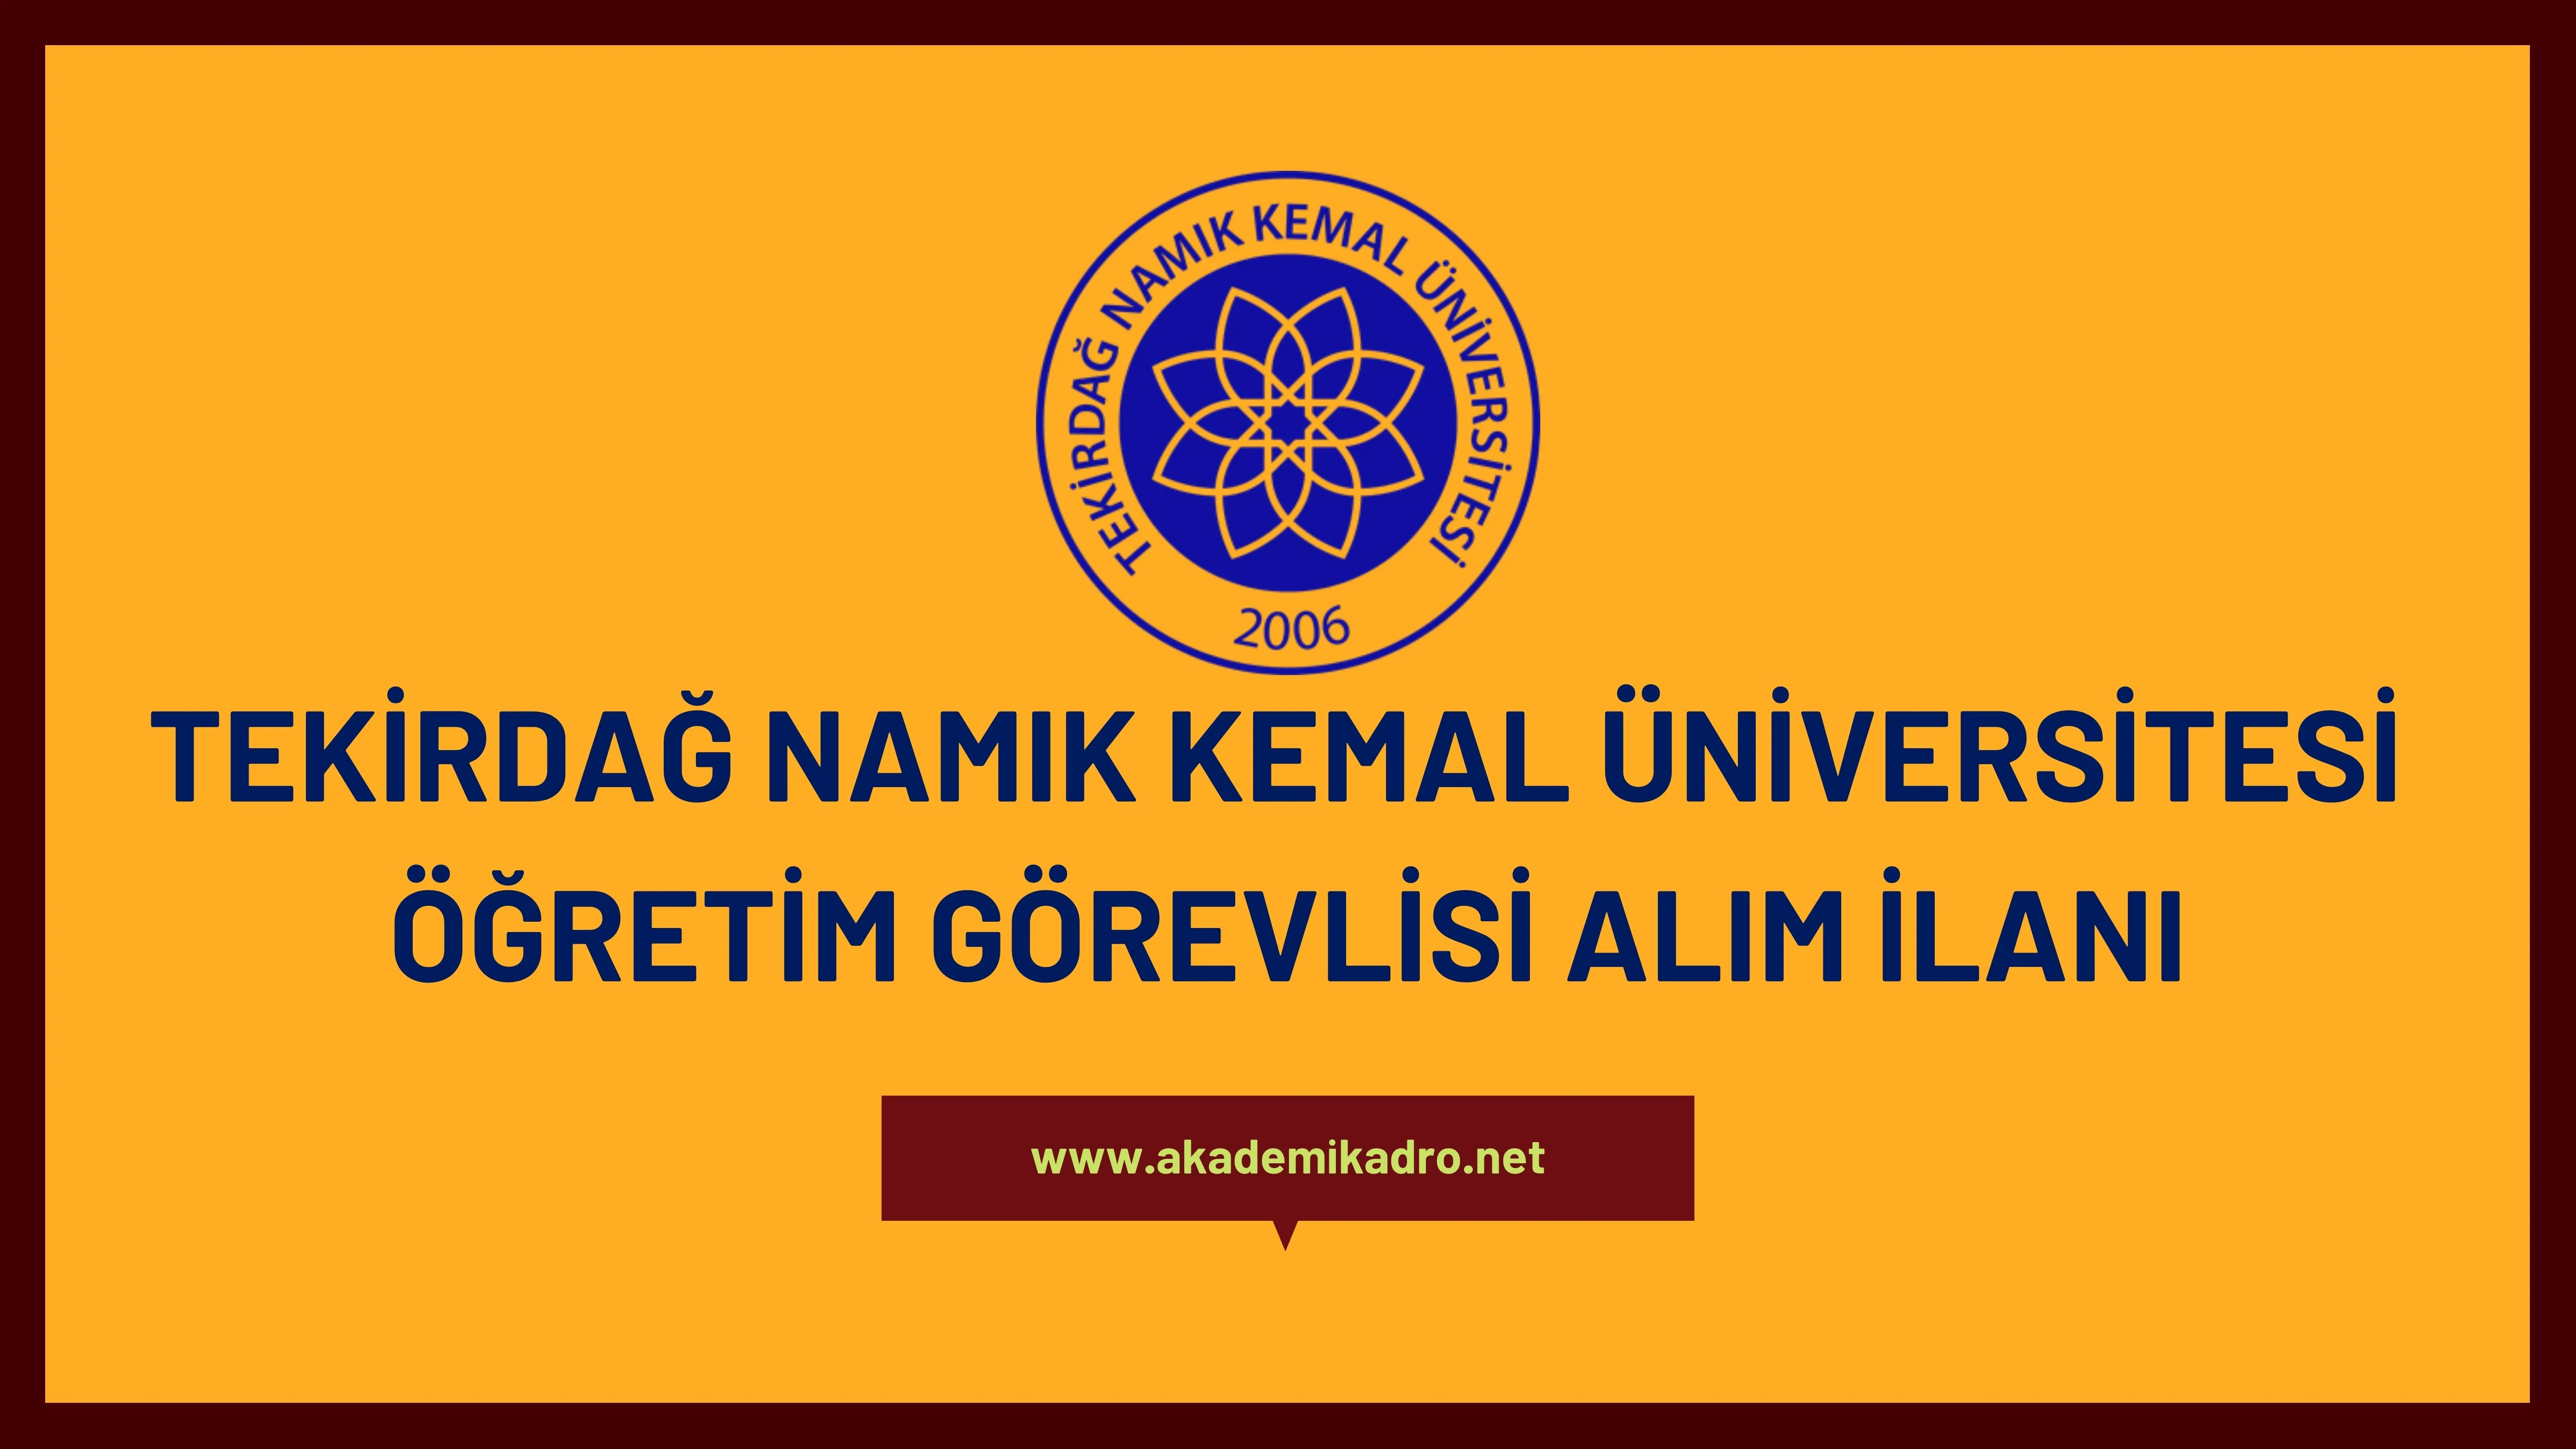 Tekirdağ Namık Kemal Üniversitesi 5 Öğretim görevlisi alacaktır. Son başvuru tarihi 13 Ocak 2023.